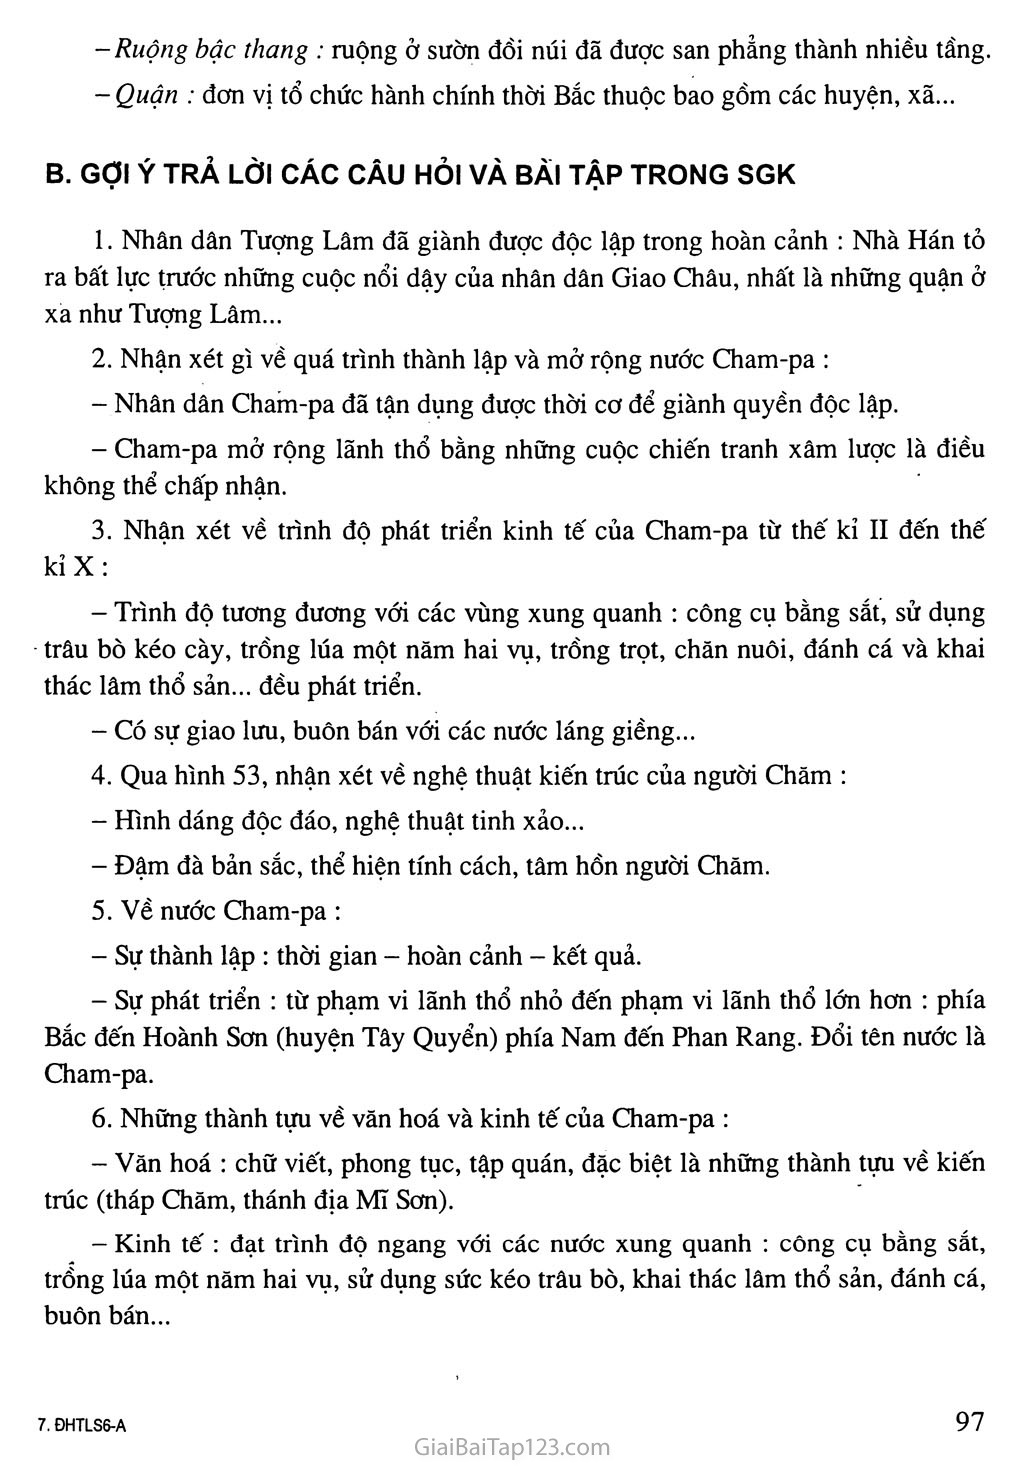 Bài 24: Nước Cham-pa từ thế kỉ II đến thế kỉ X trang 3